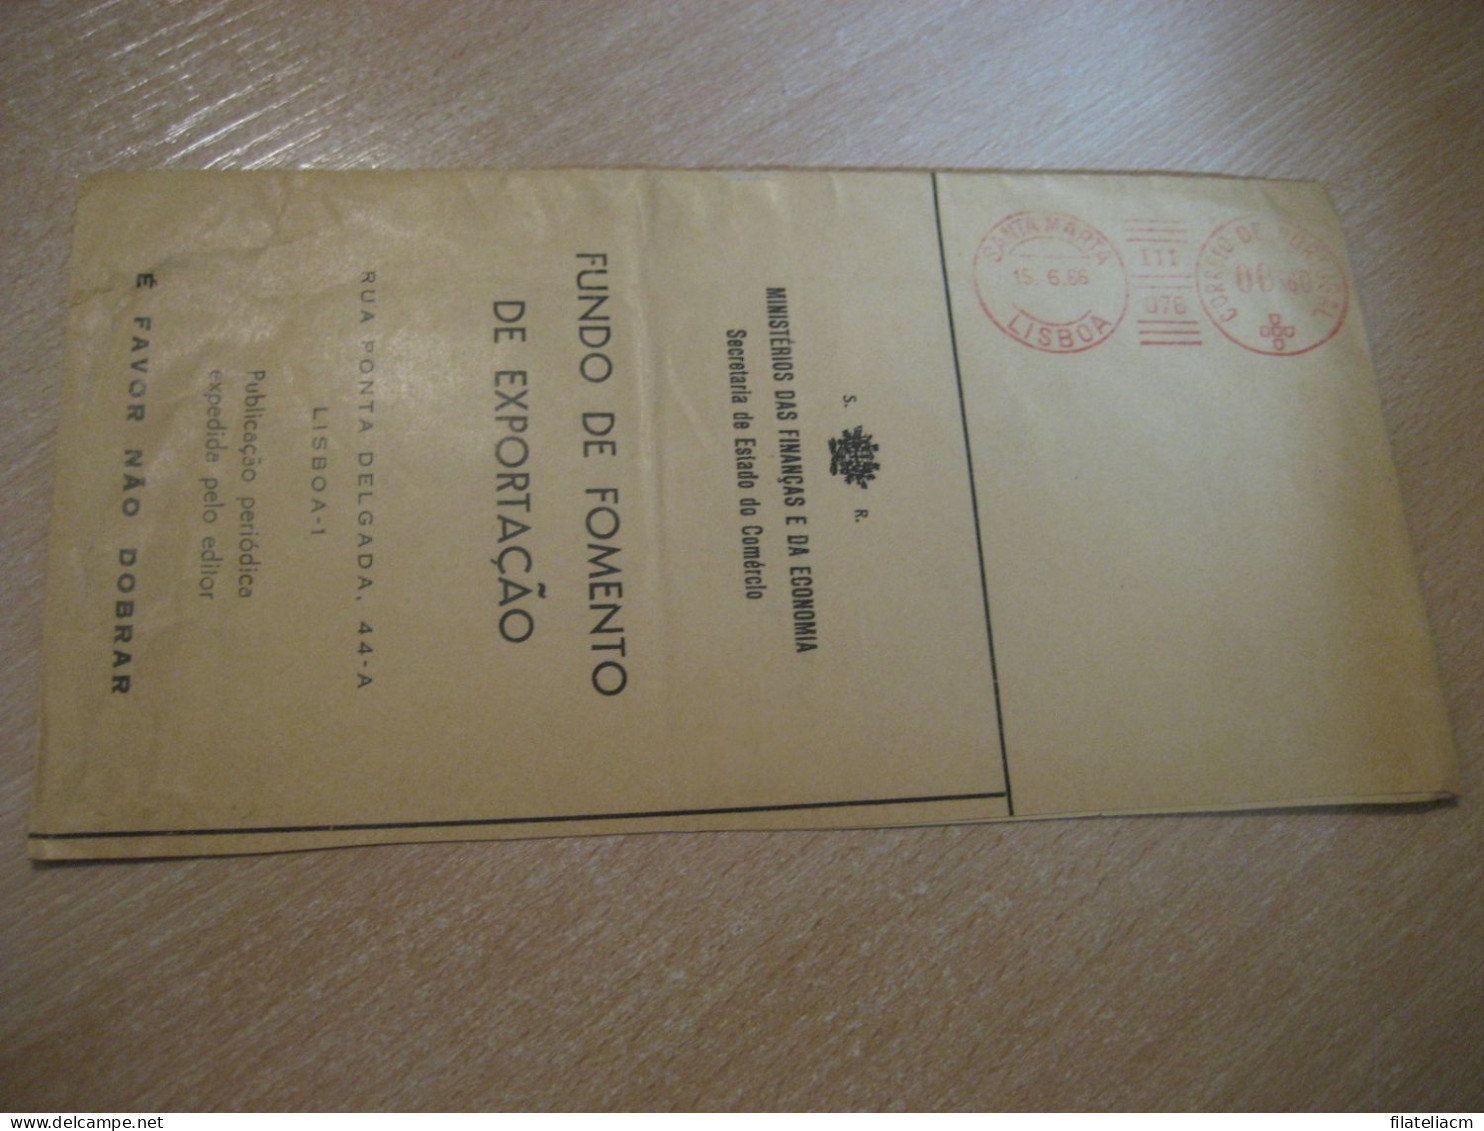 LISBOA 1966 Fomento Exportaçao Ministerios Das Finanças Economia Meter Mail Cancel Cover PORTUGAL - Briefe U. Dokumente